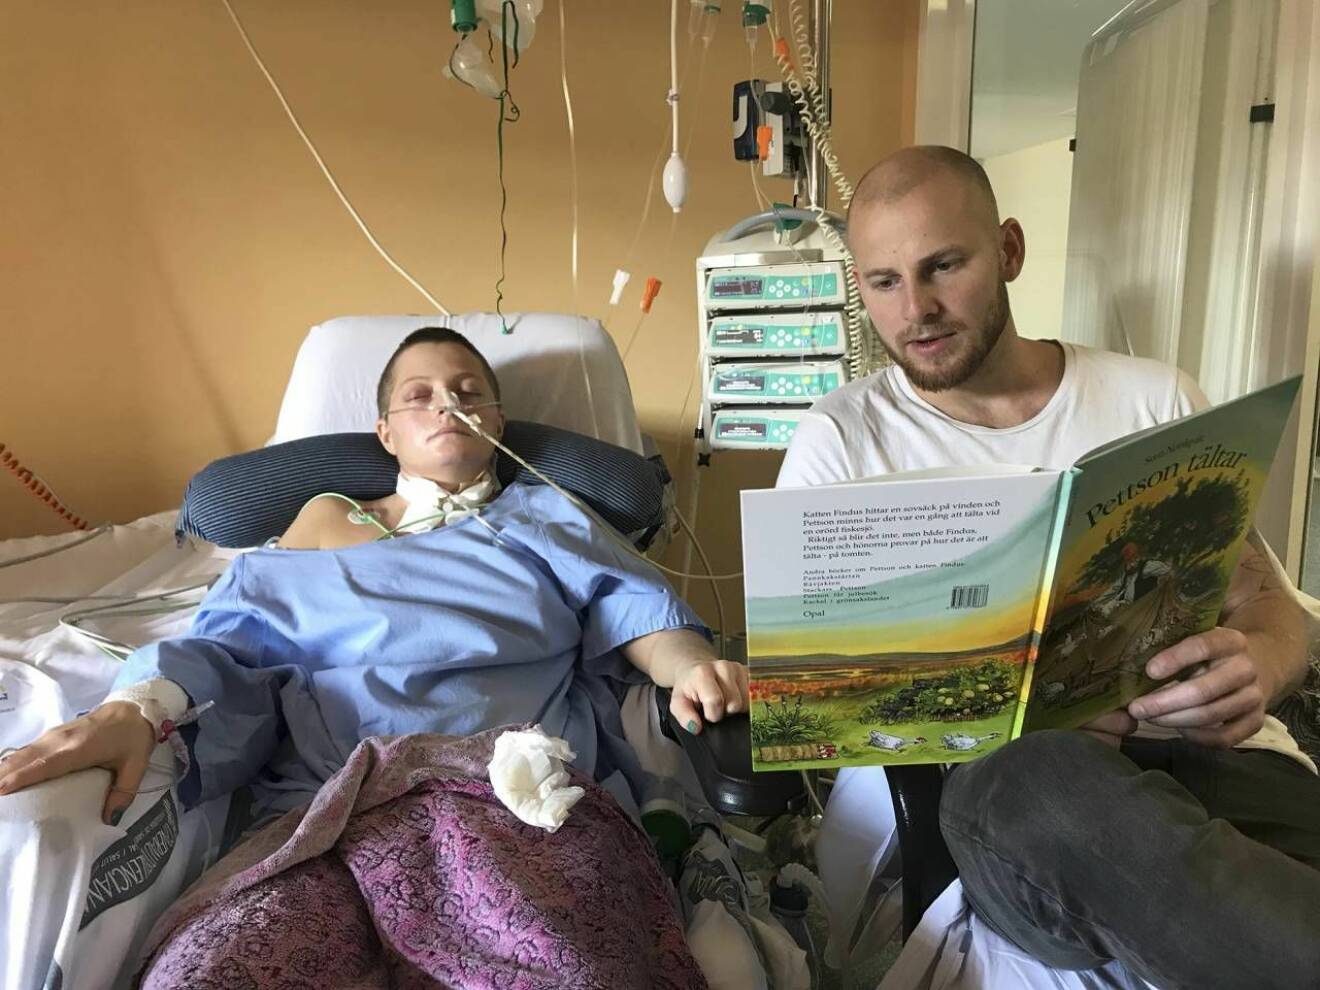 Stinas tvillingbror Johan läser högt för henne under sjukhusvistelsen